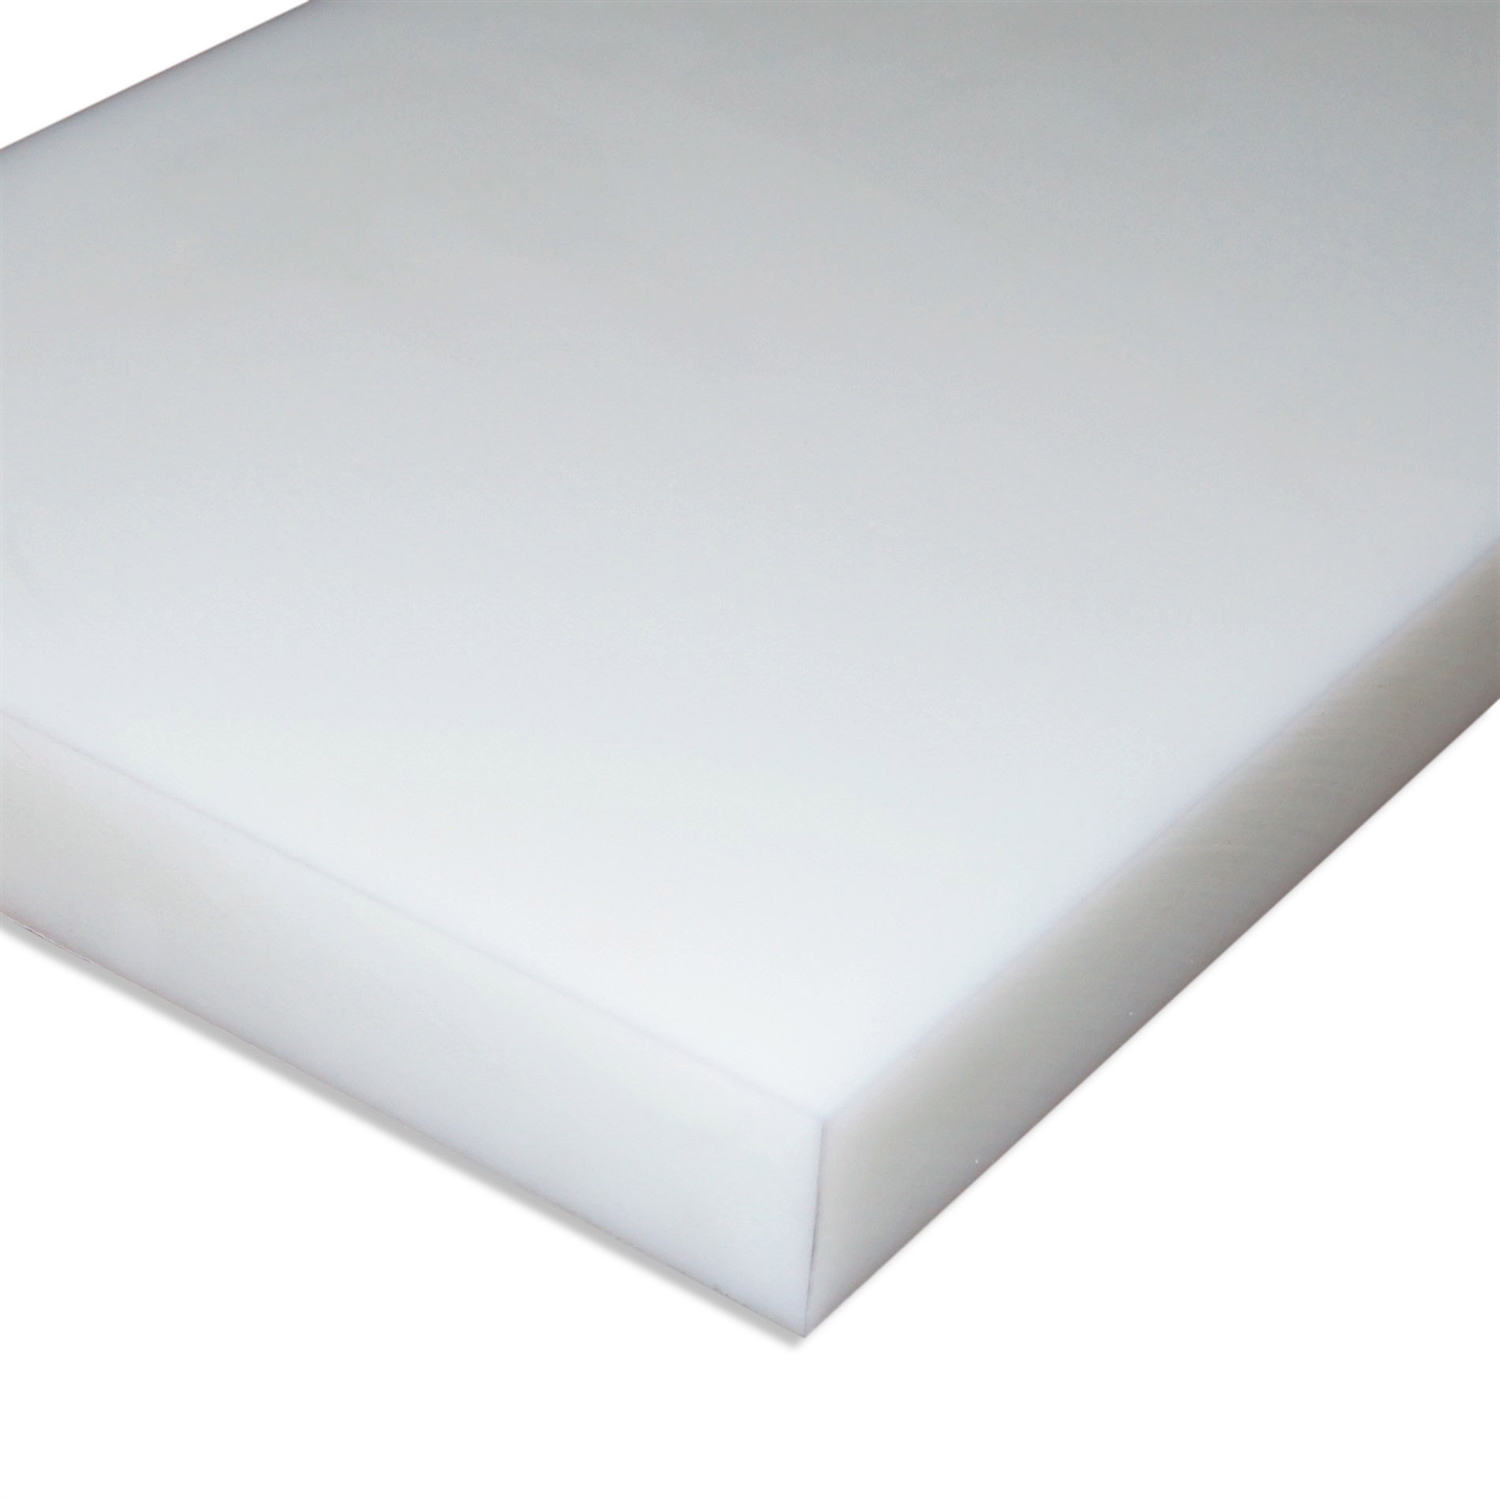 POM natur 500x100x40mm weiß Platte Zuschnitt Kunststoff Halbzeug 